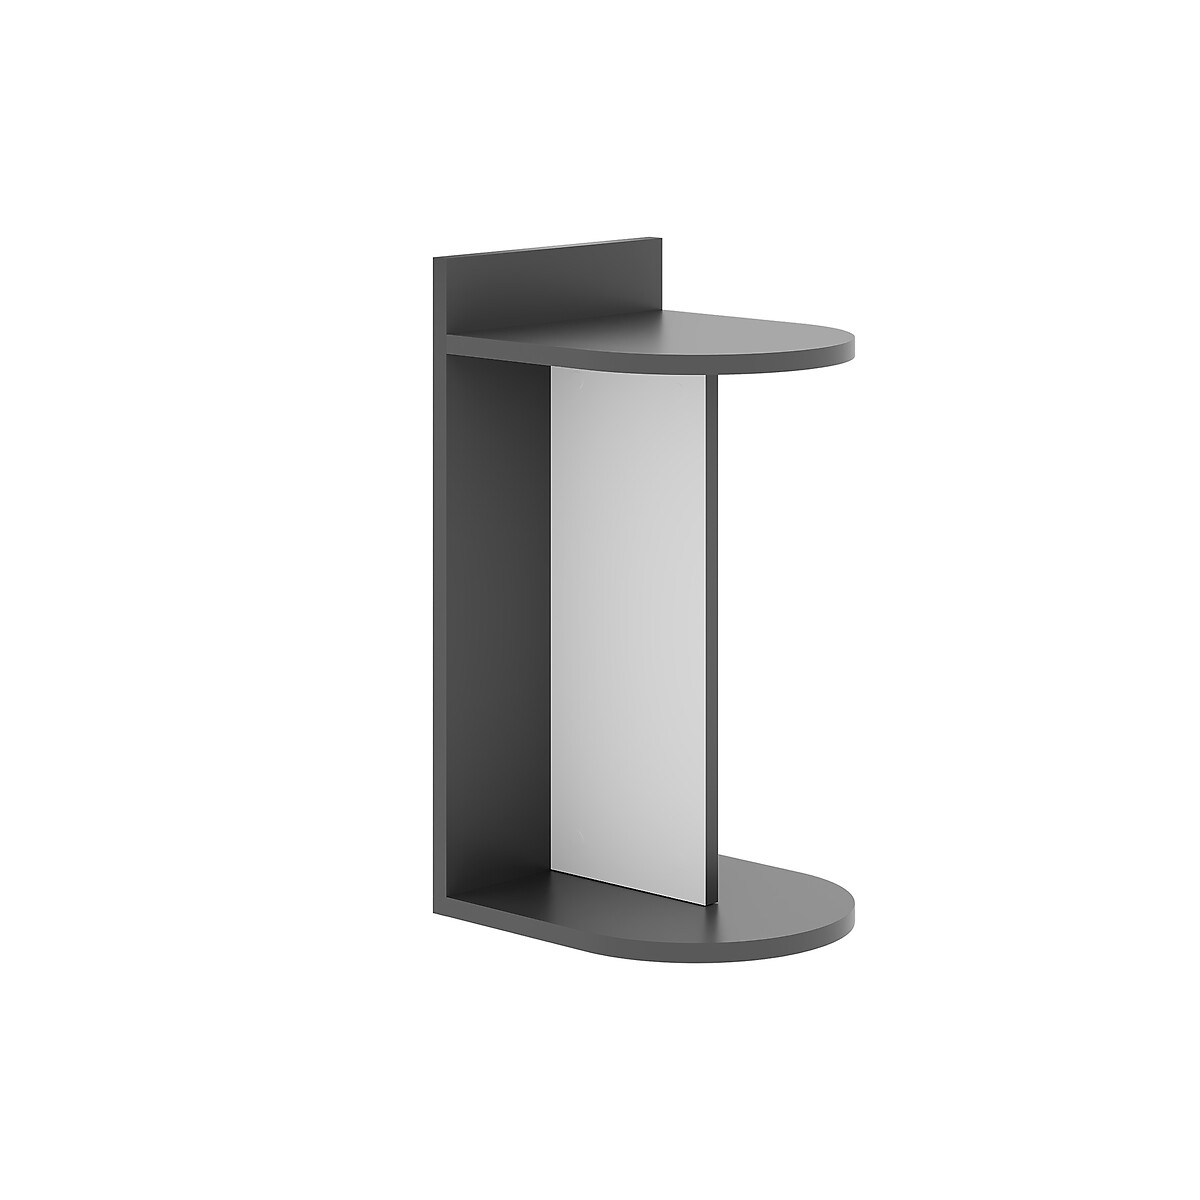 Стол приставной DOM SIDE TABLE единый размер серый аксессуары для мебели вырастайка стол приставной 2 к ограничителю